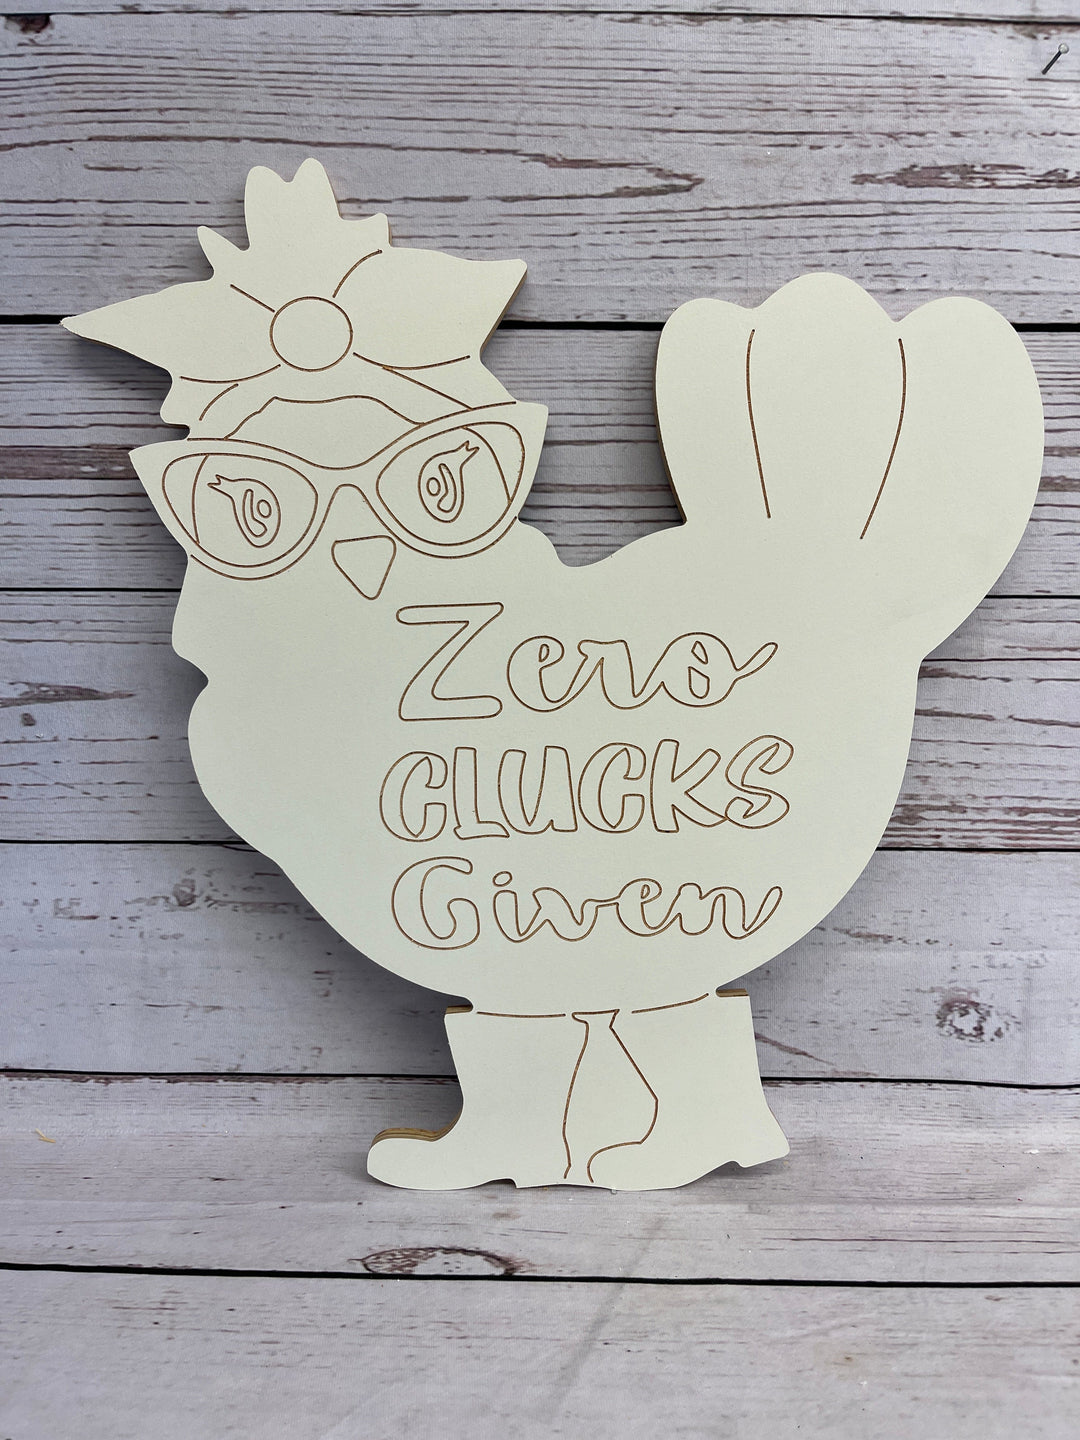 Zero Clucks Given chicken yard art 